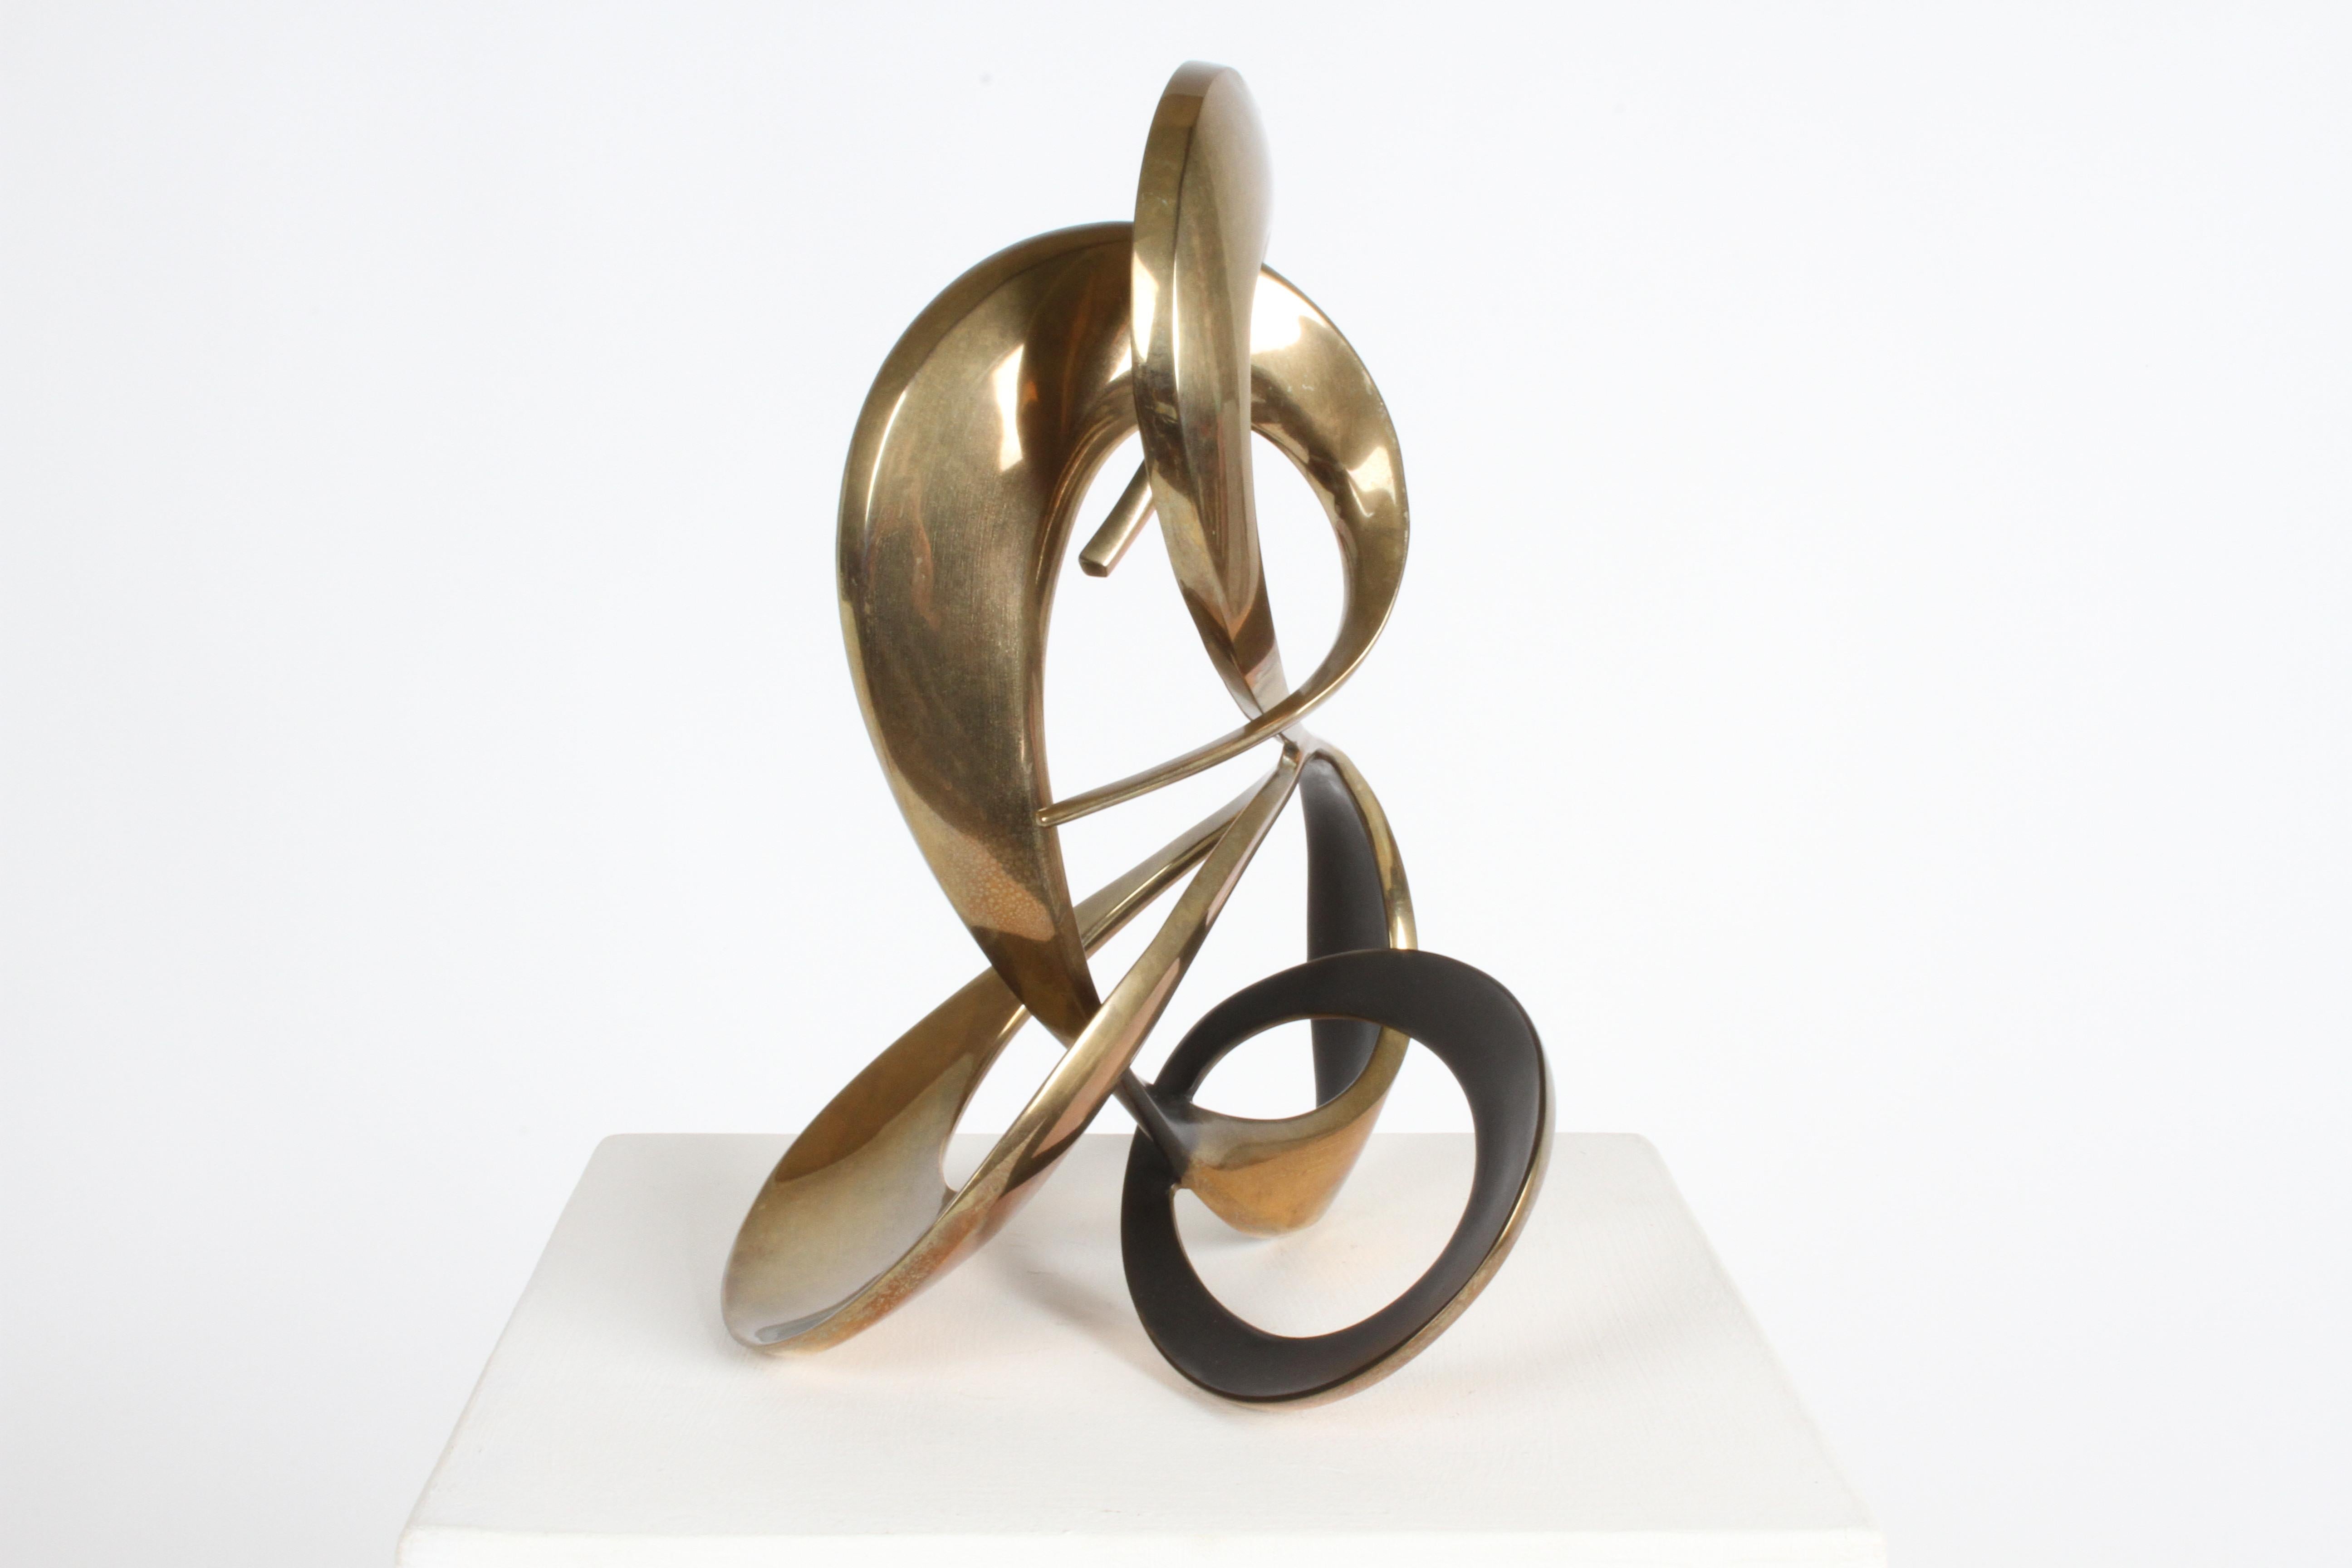 Modernist 80s Bronze Abstract Free Form Sculpture by Artist Bob Bennett #80/100 1